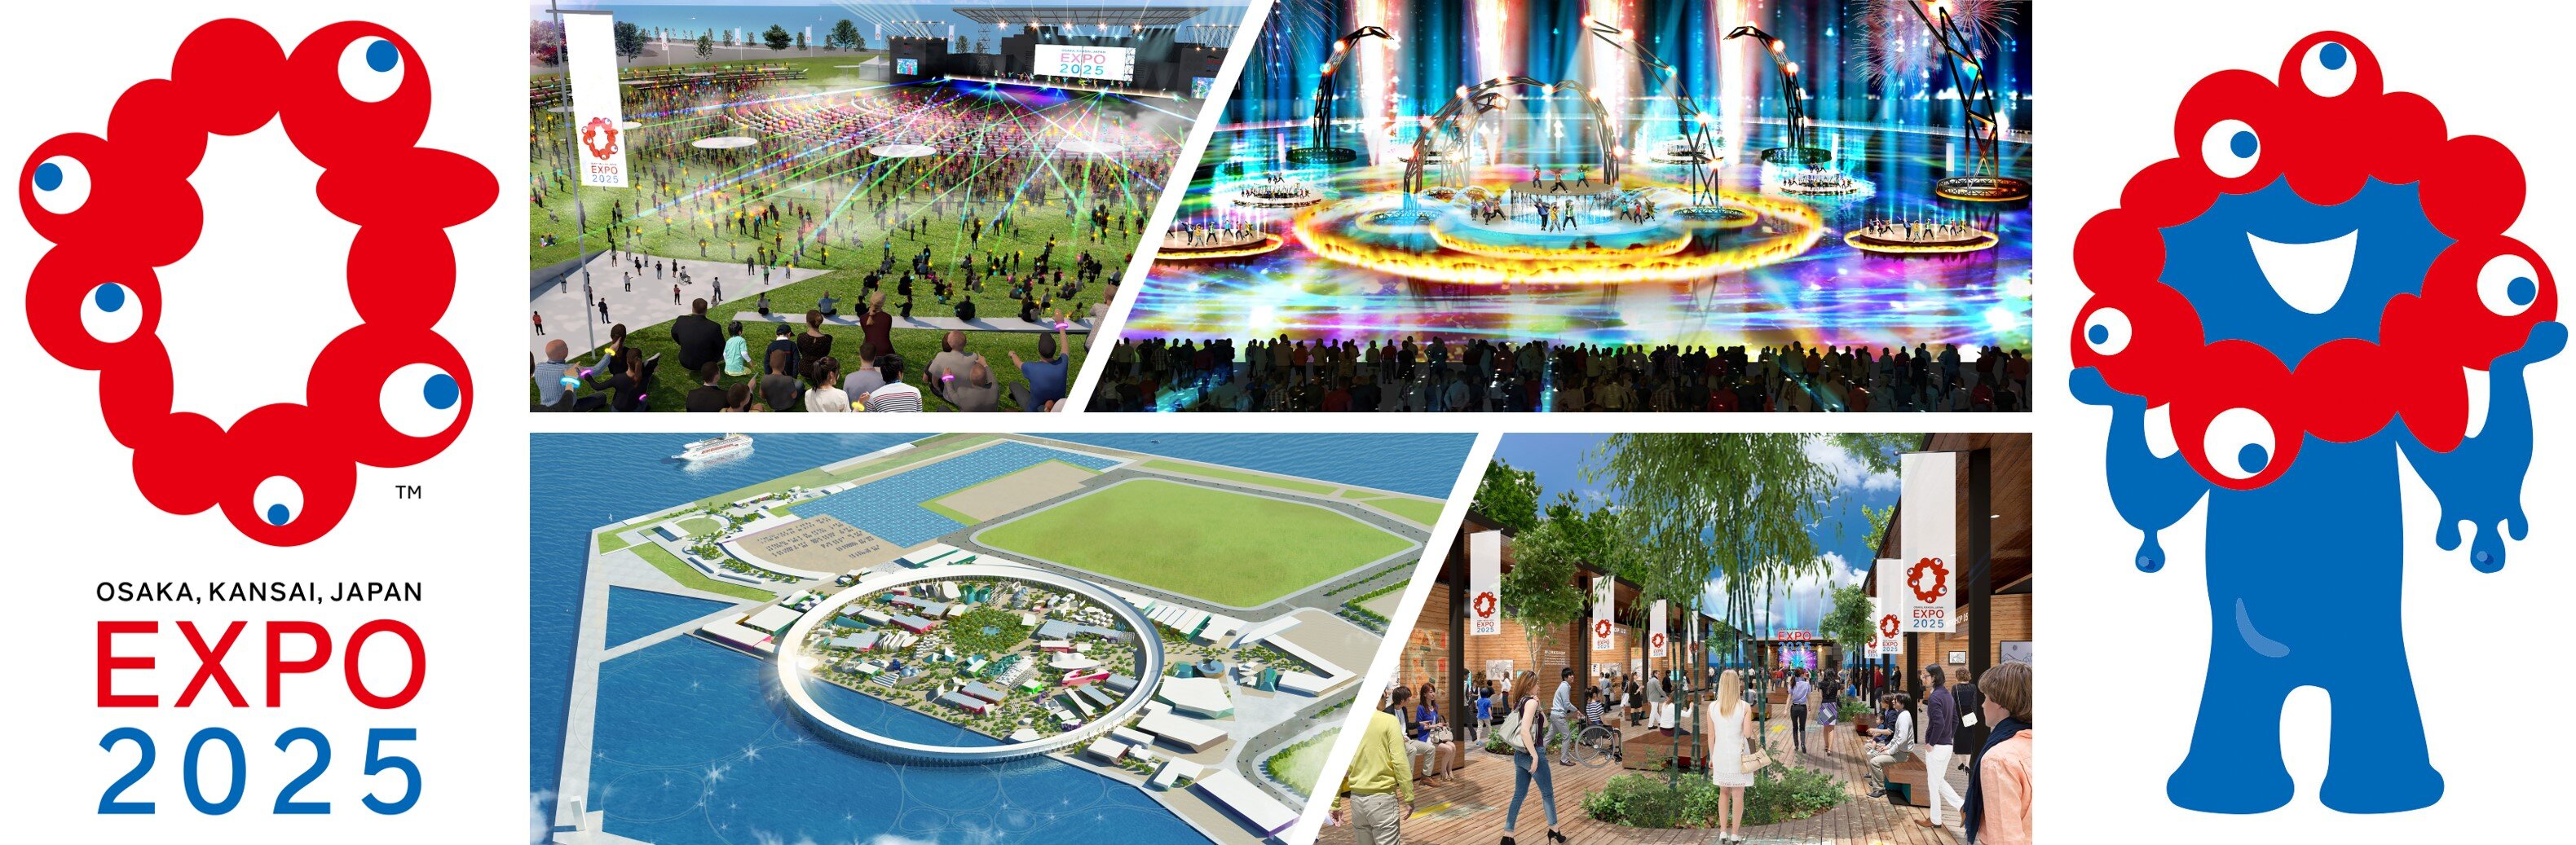 Expo Osaka 2025 Mediavida